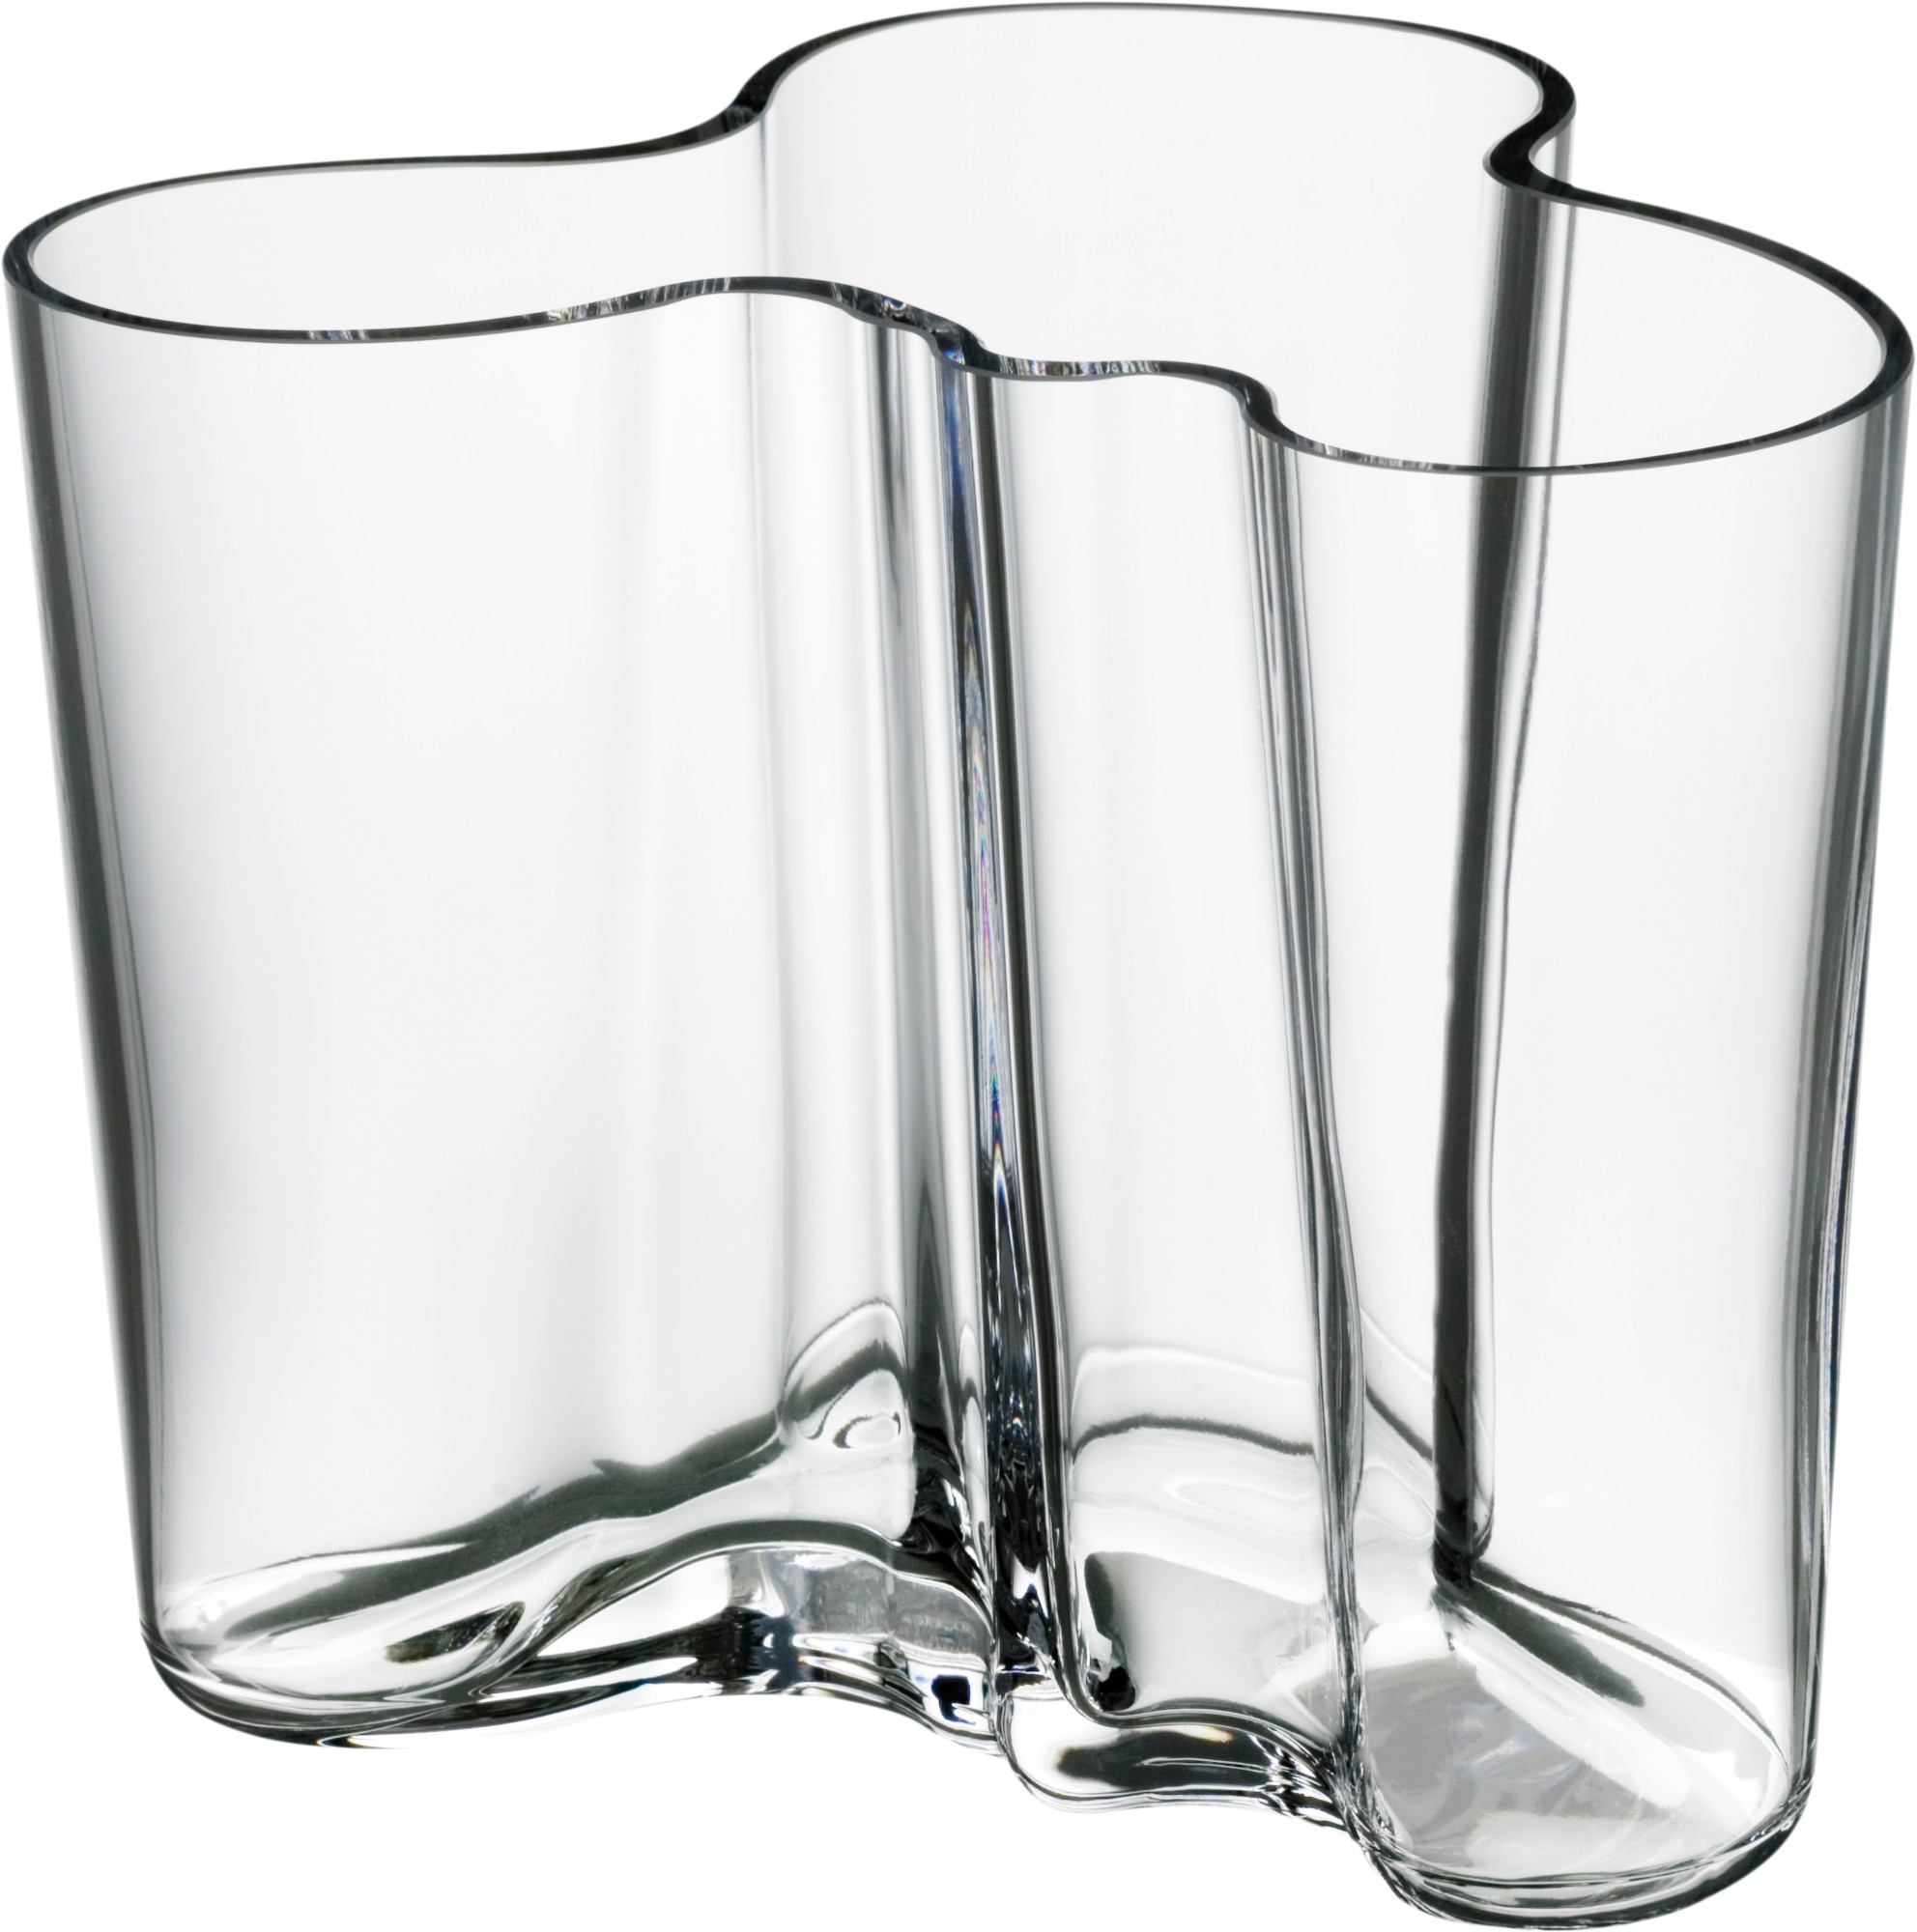 Iittala Alvar Aalto Collection Vase 120 Mm Clear Iittala Com